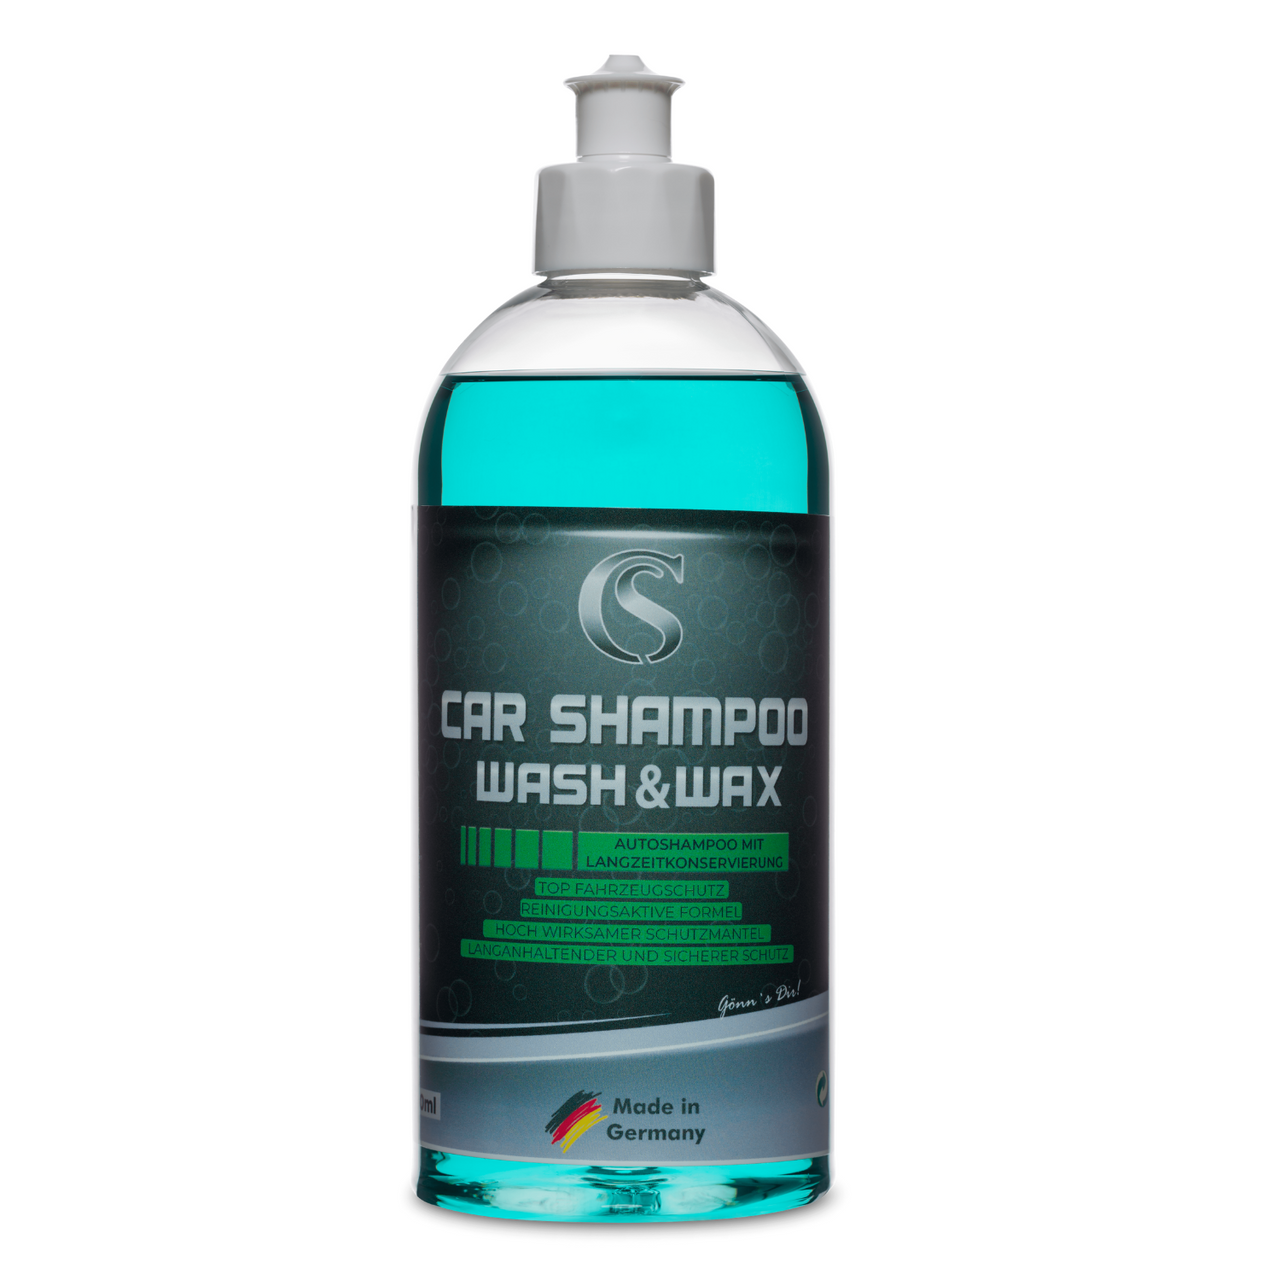 Wash & Wax Autoshampoo mit Langzeitkonservierung